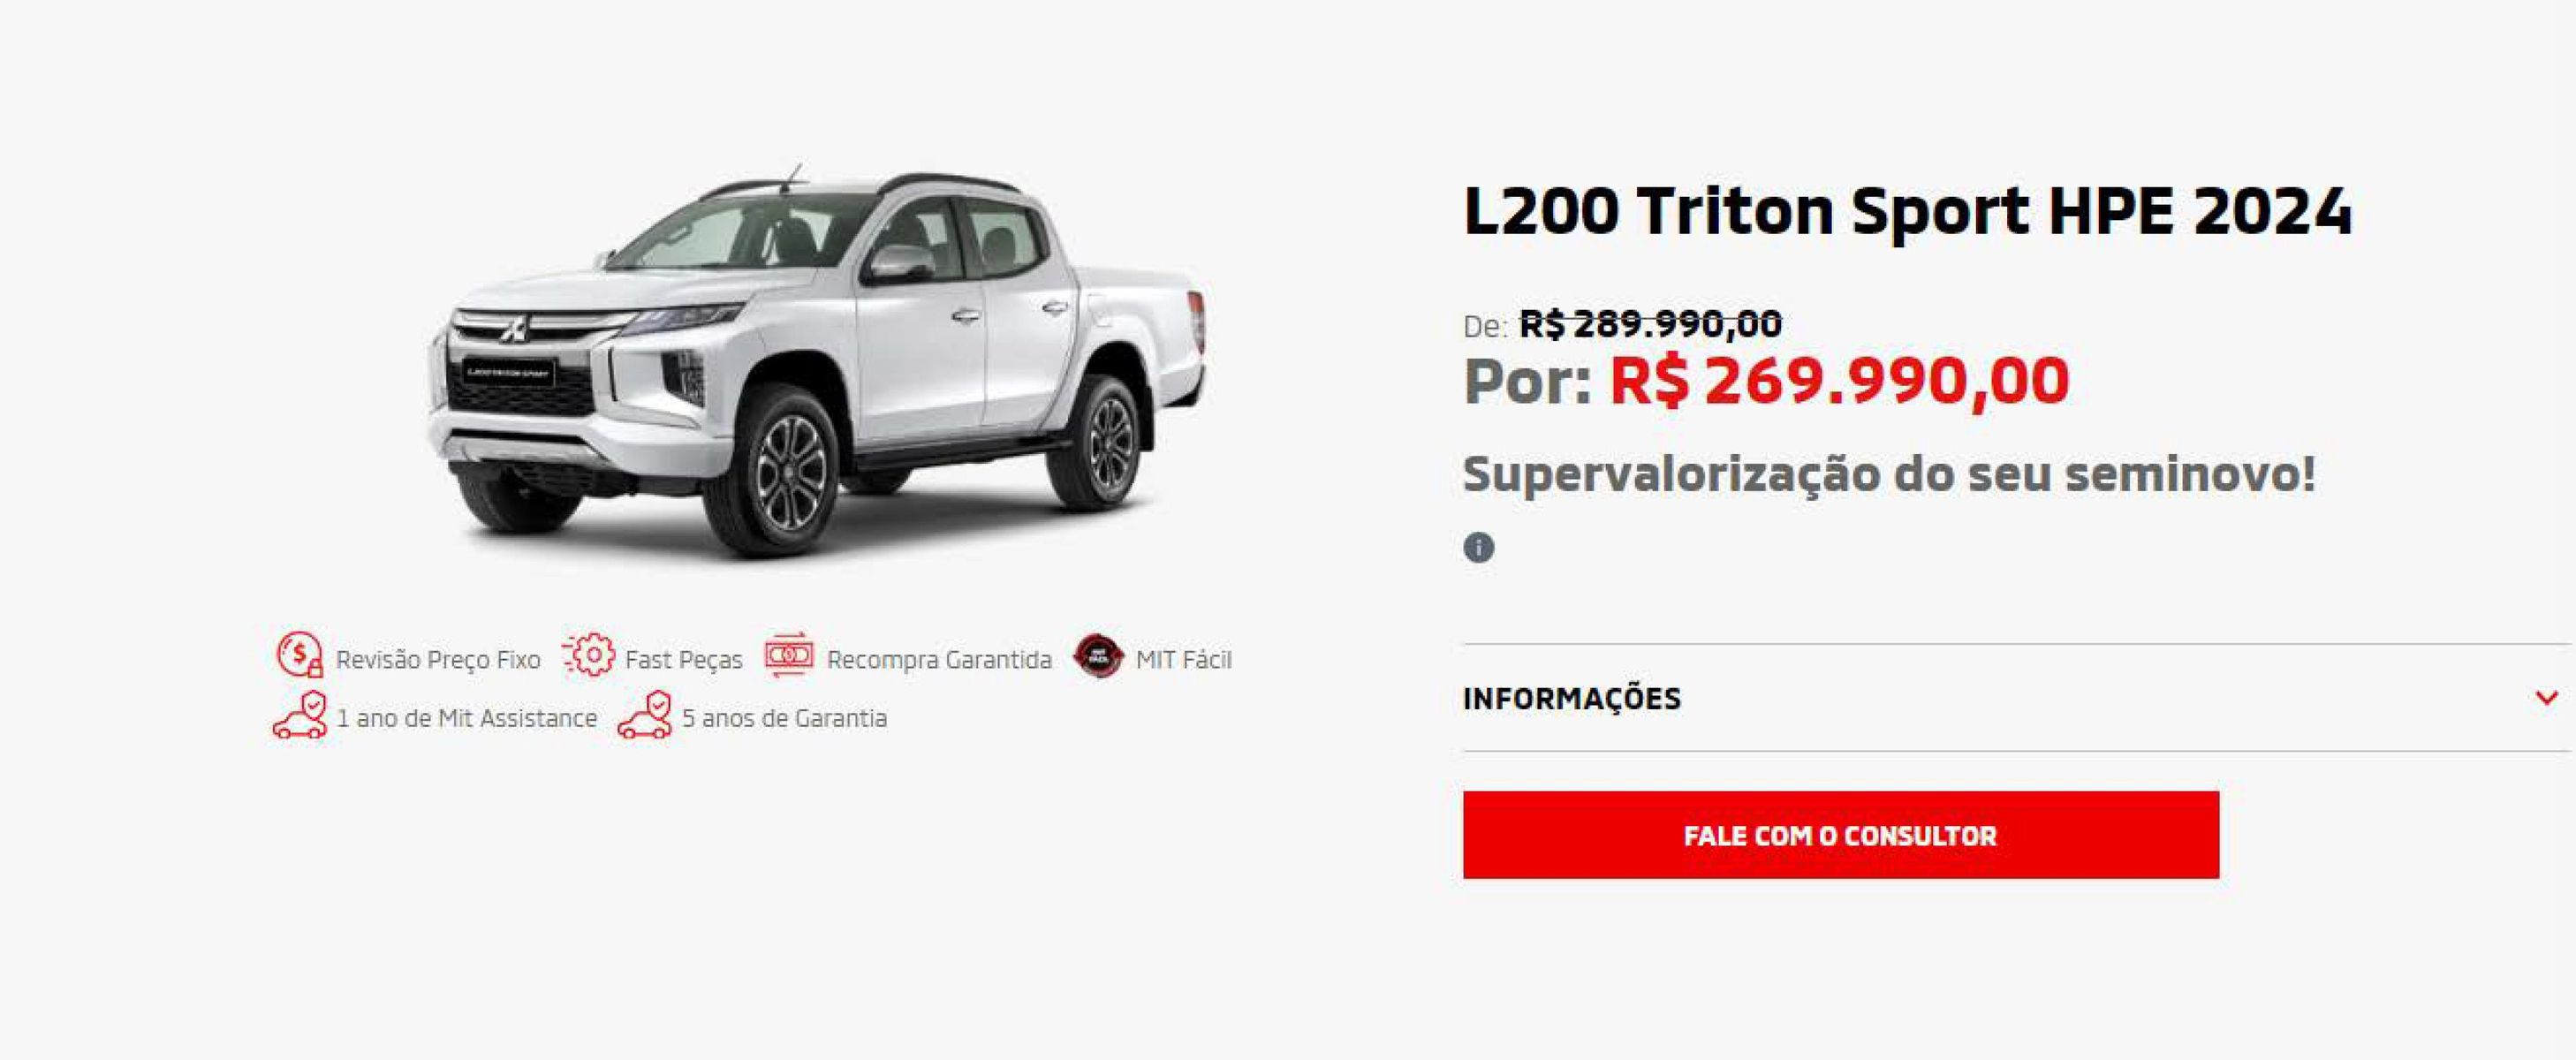 L200 Triton Sport HPE 2024 por R$ 269.990,00